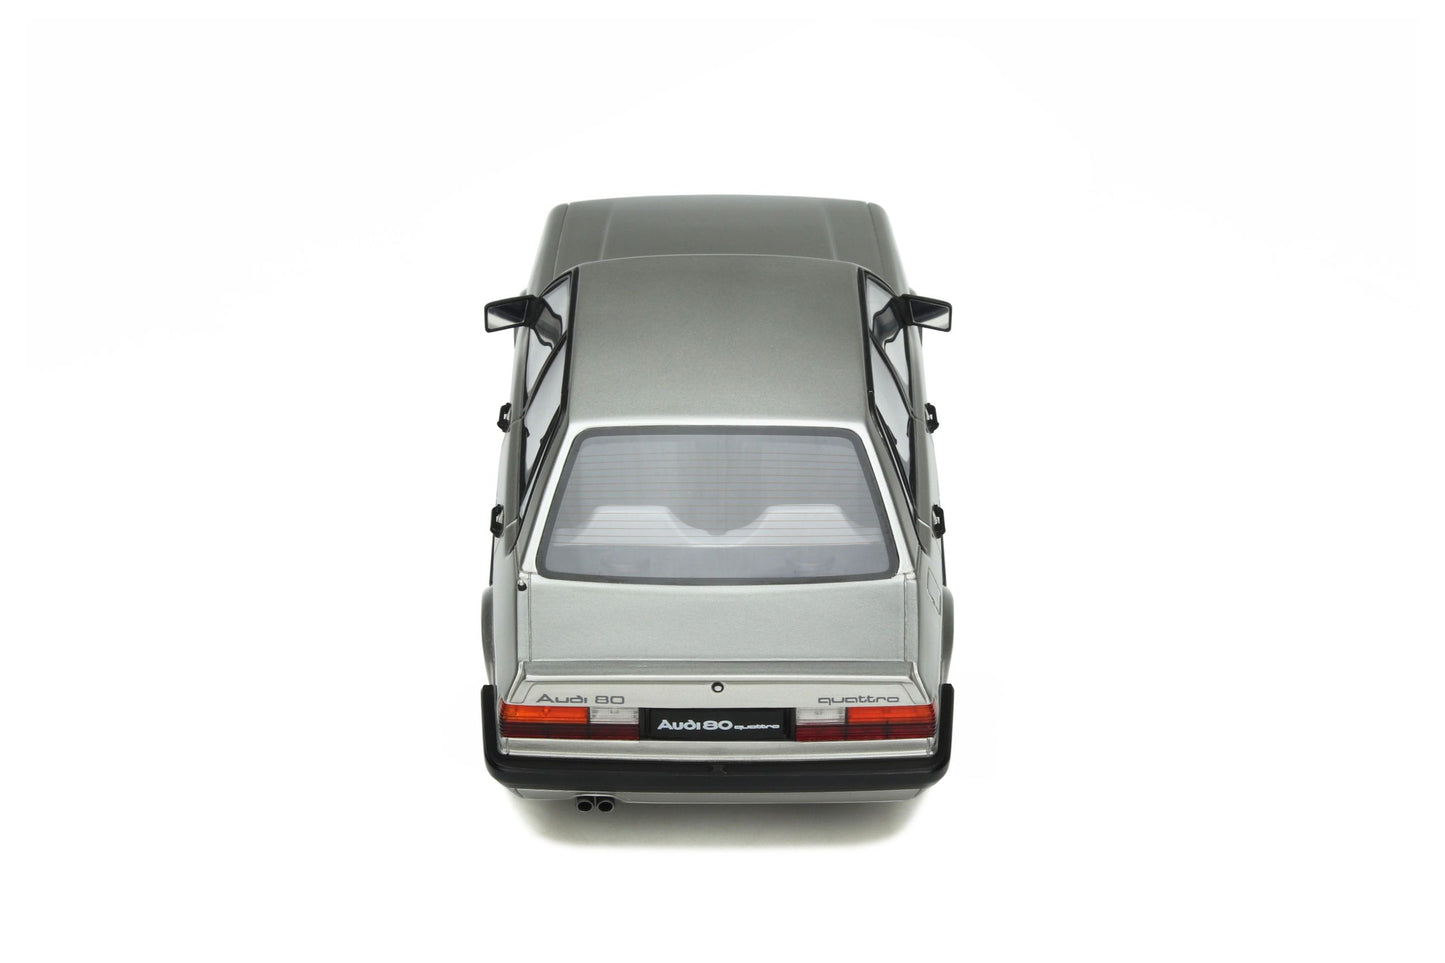 OttOmobile - Audi 80 Quattro (B2) (Zermatt Silver) 1:18 Scale Model Car